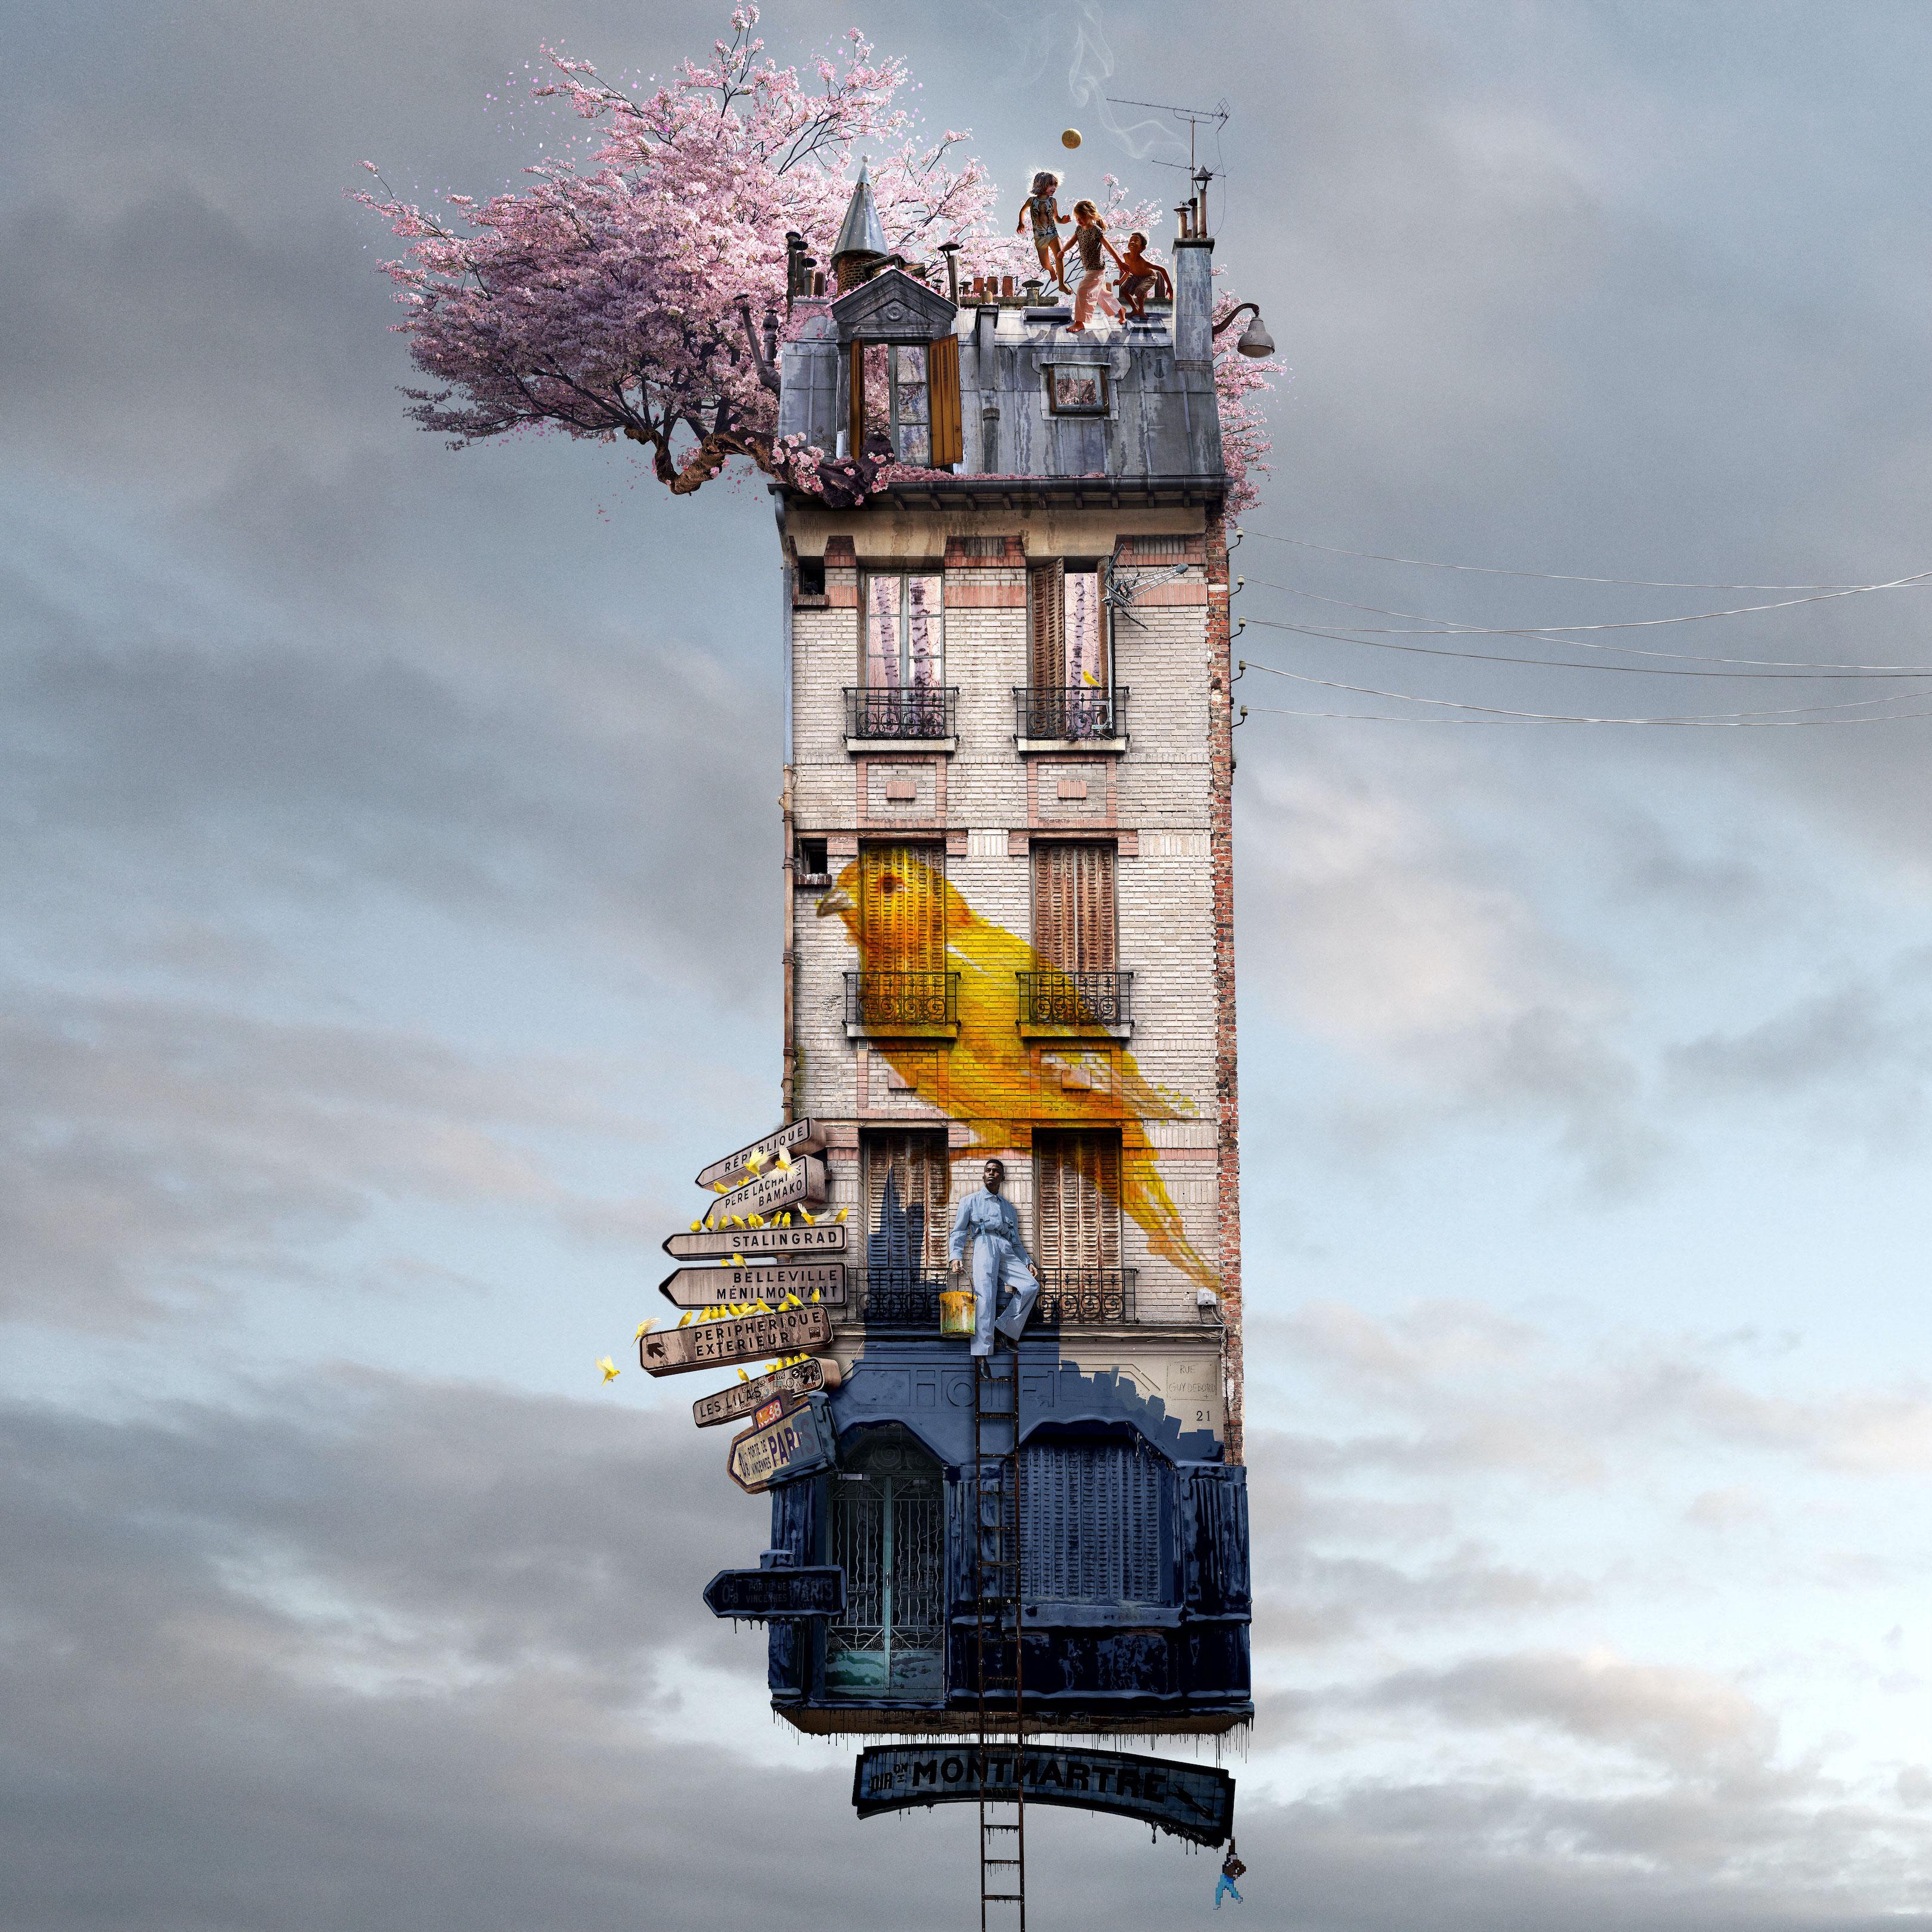 Color Photograph Laurent Chéhère - 3 samourais - photographie couleur manipulée fantaisiste d'une maison parisienne volante